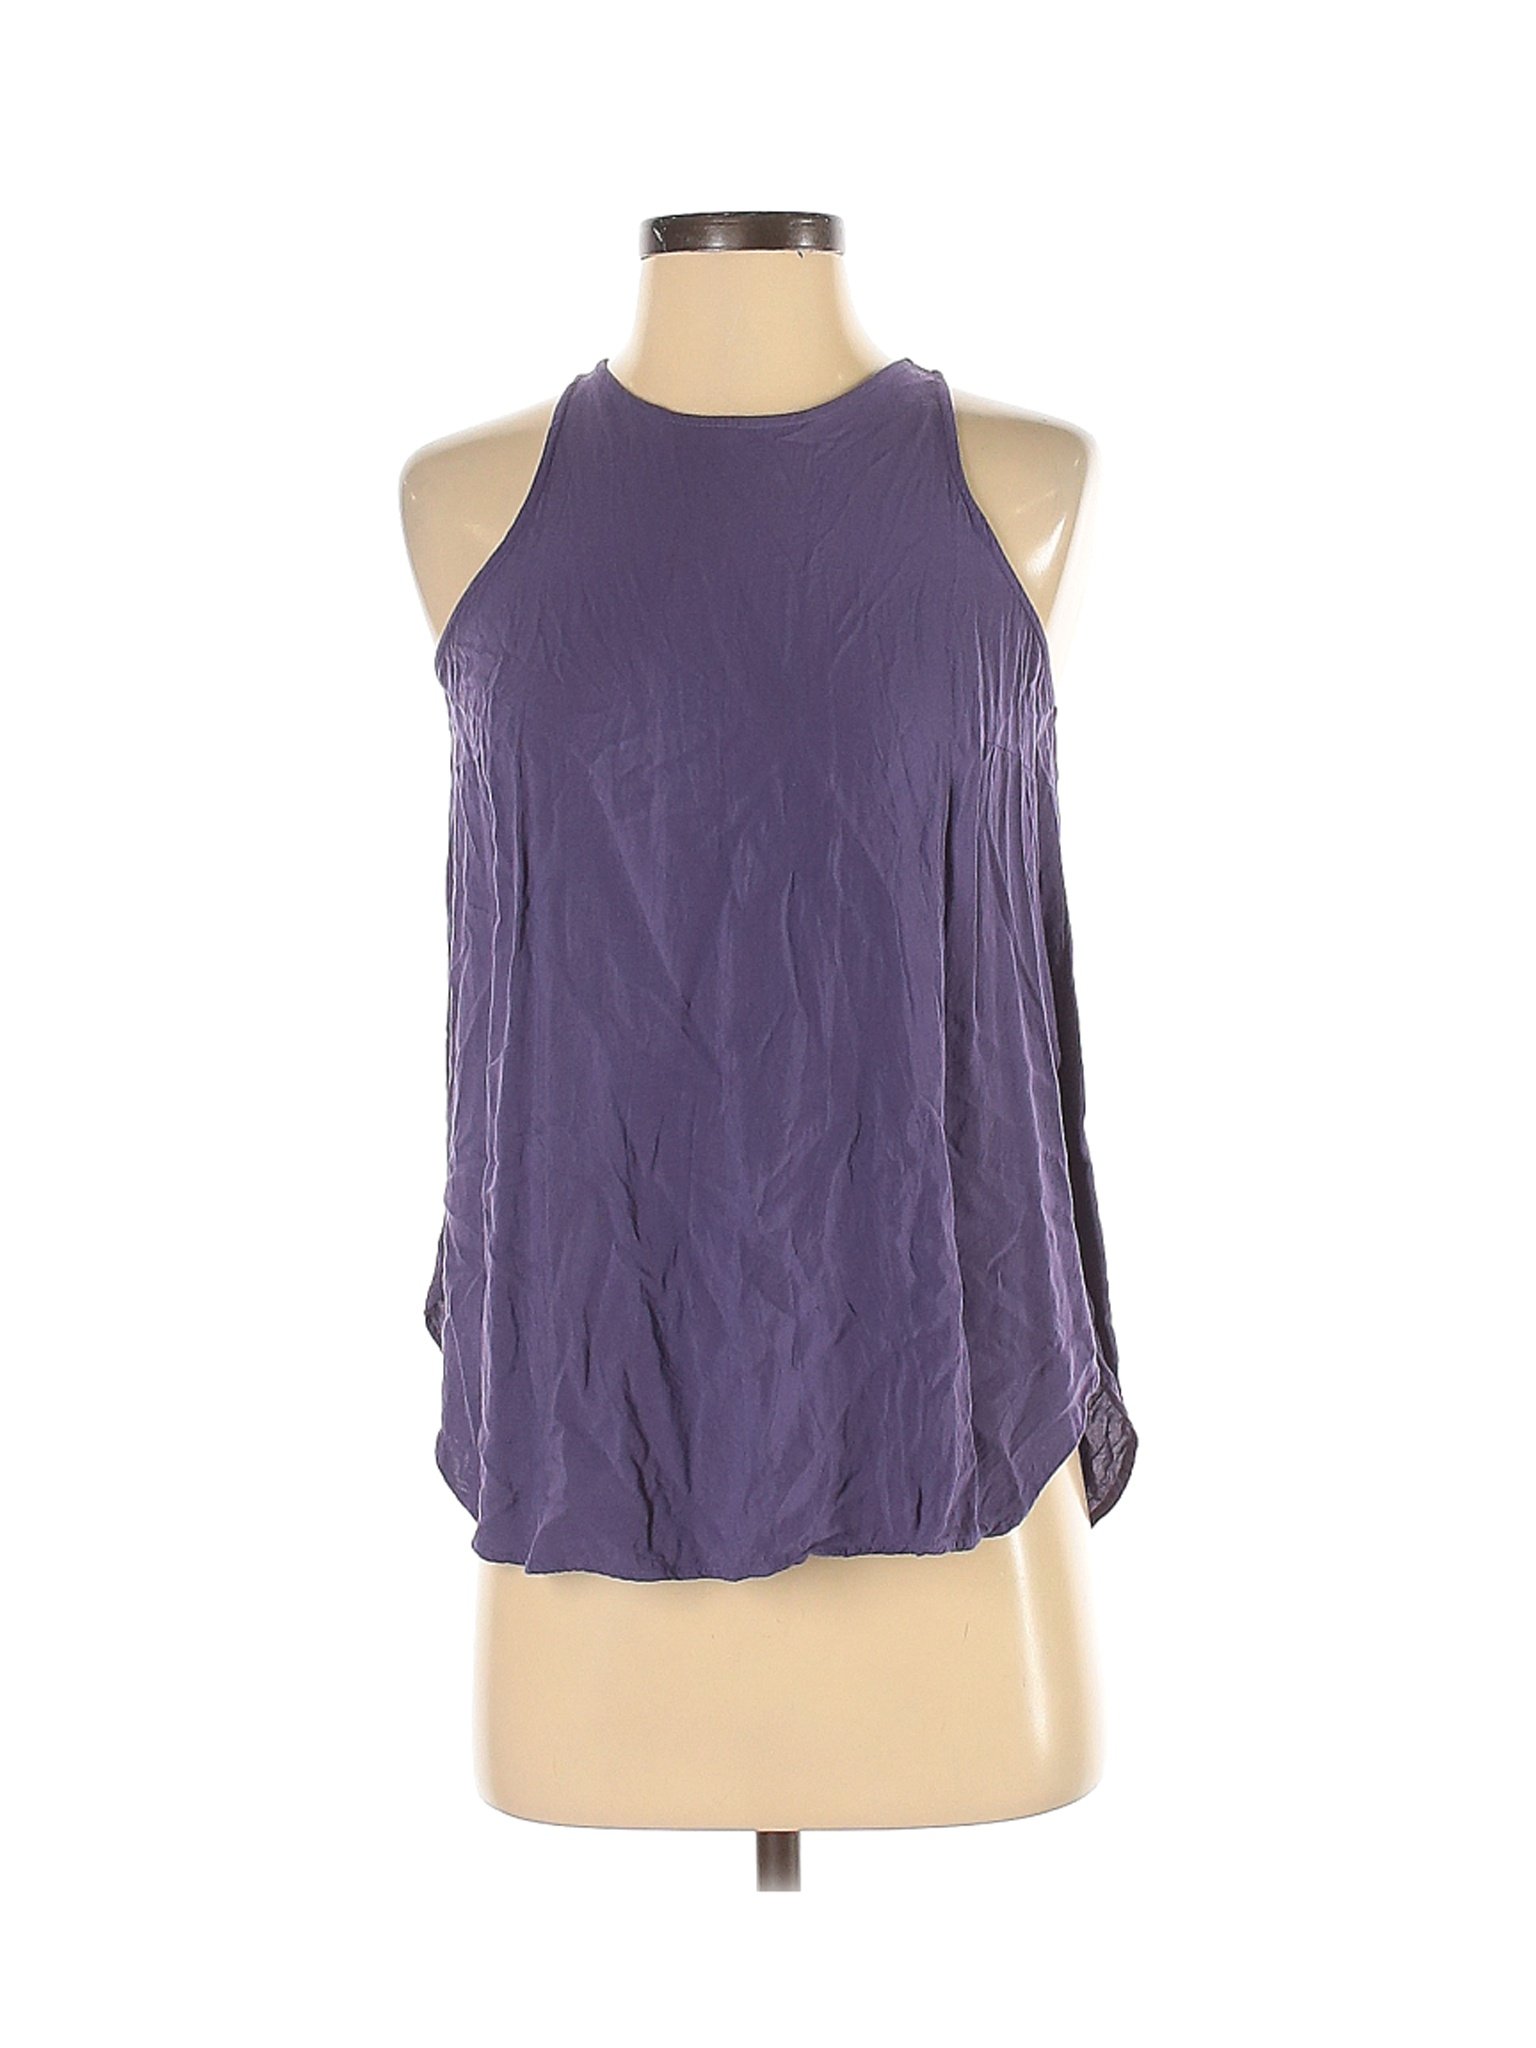 Old Navy Women Purple Sleeveless Blouse XS | eBay